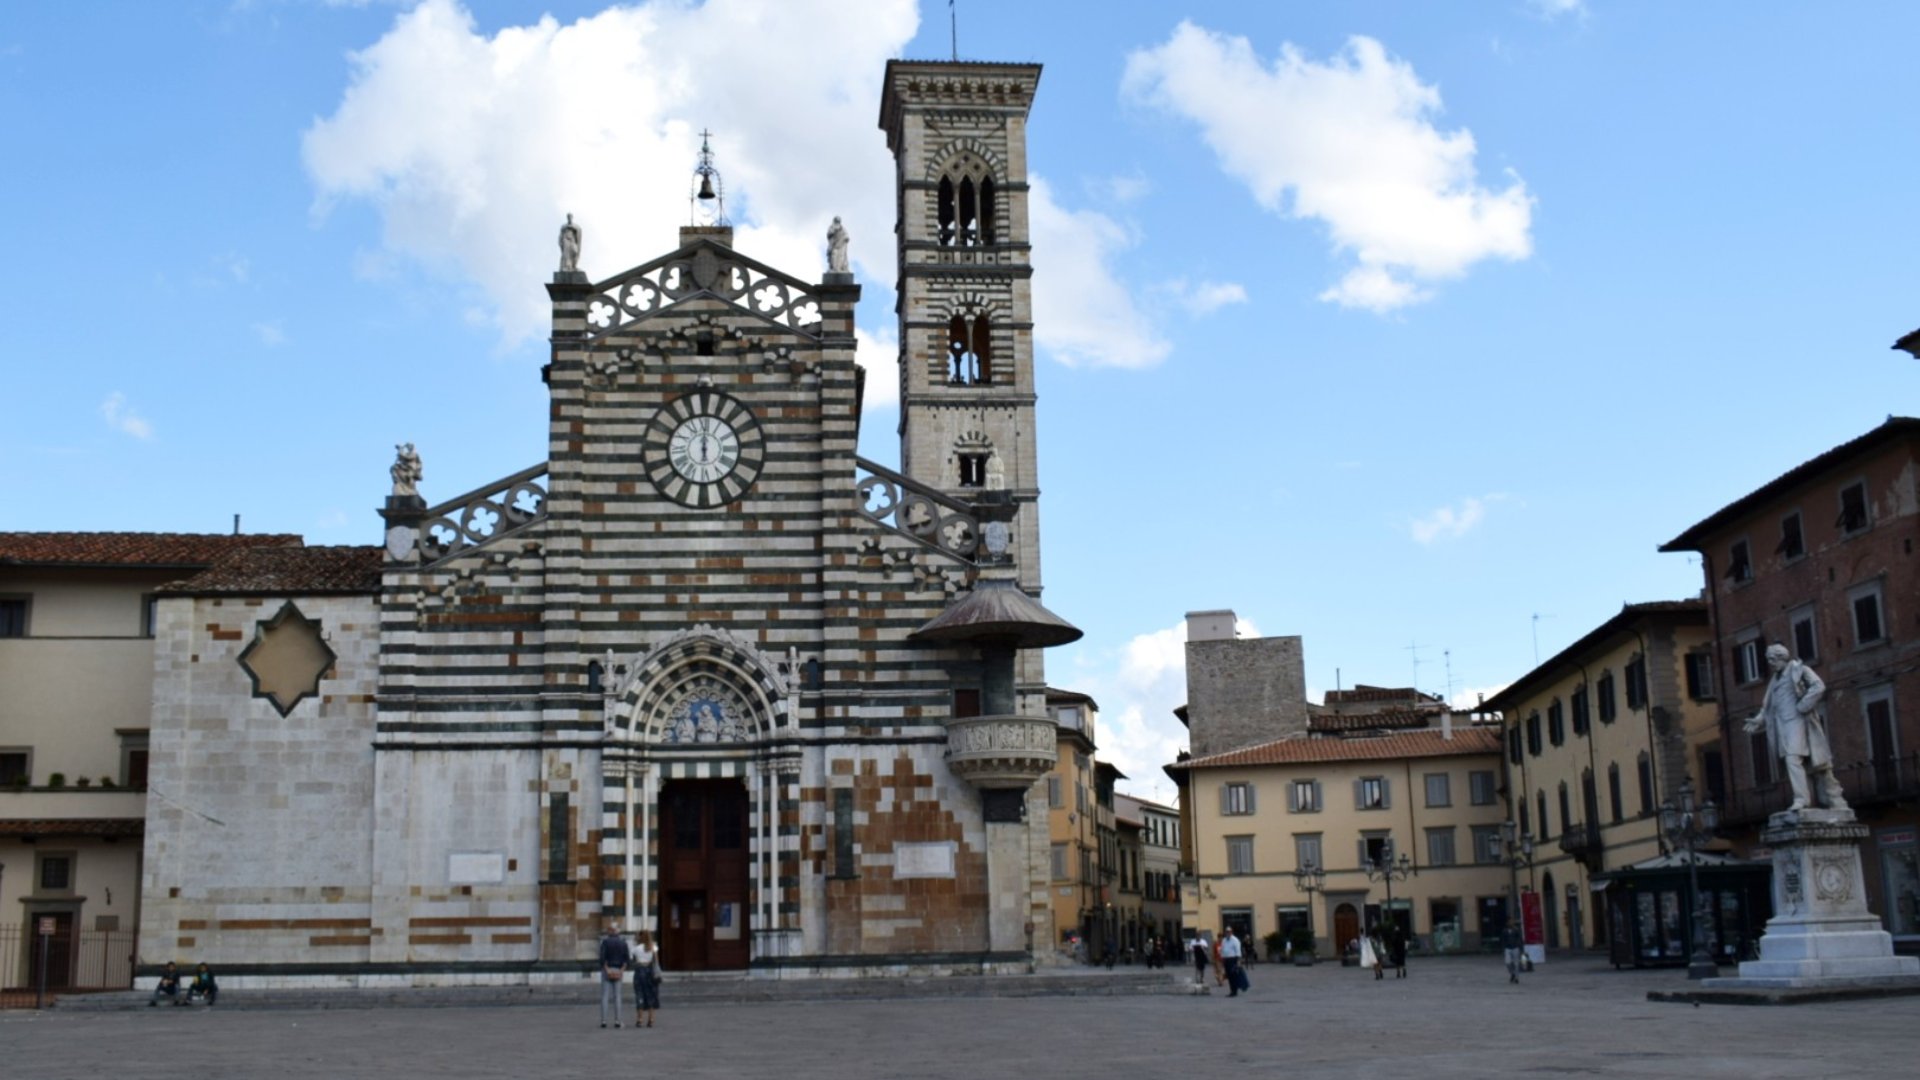 Piazza del Duomo in Prato